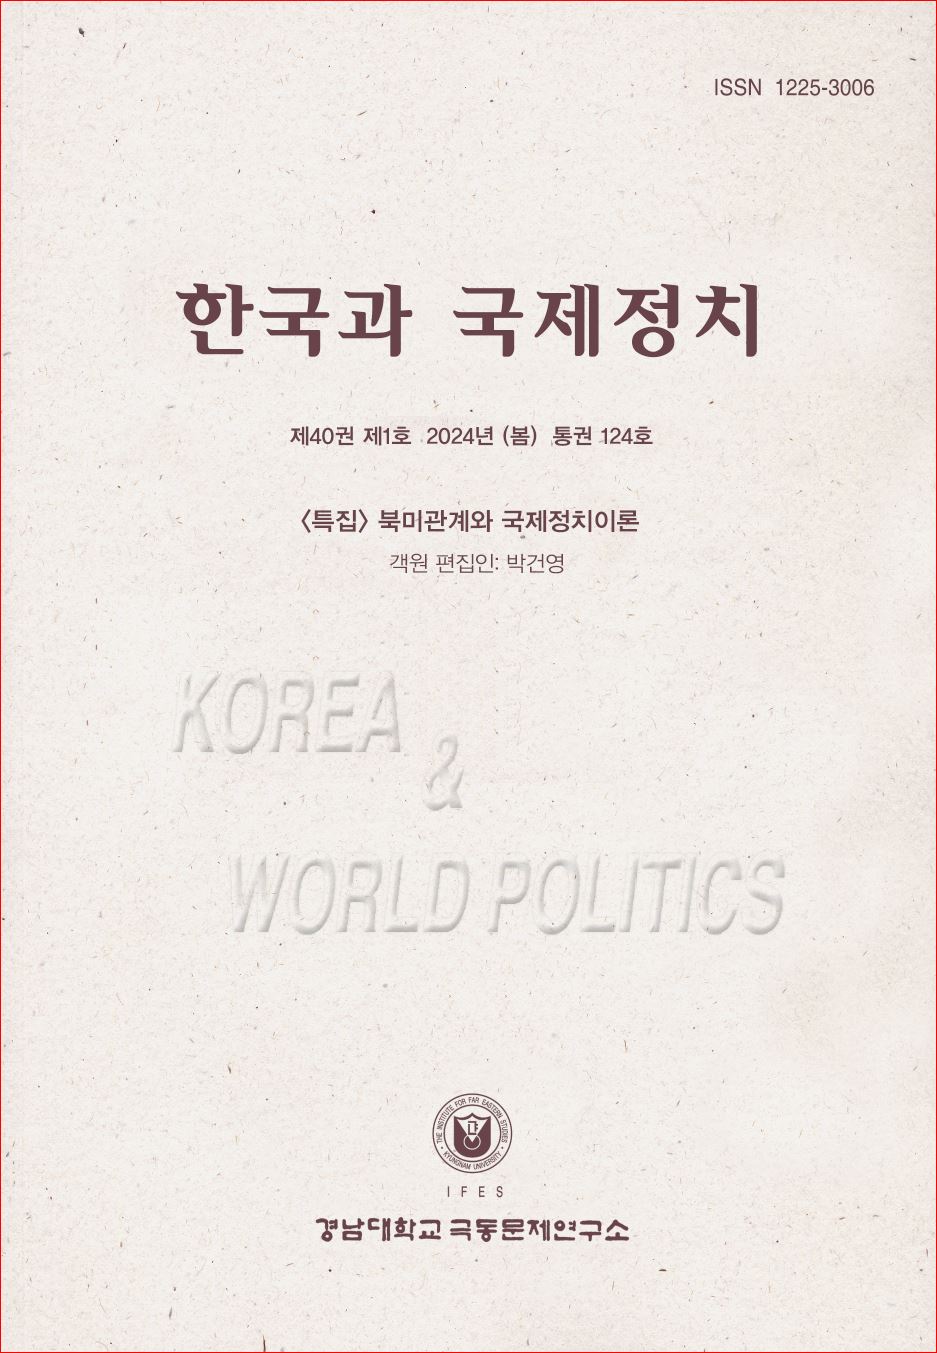 Korea and World Politics, Vol.40, No.1